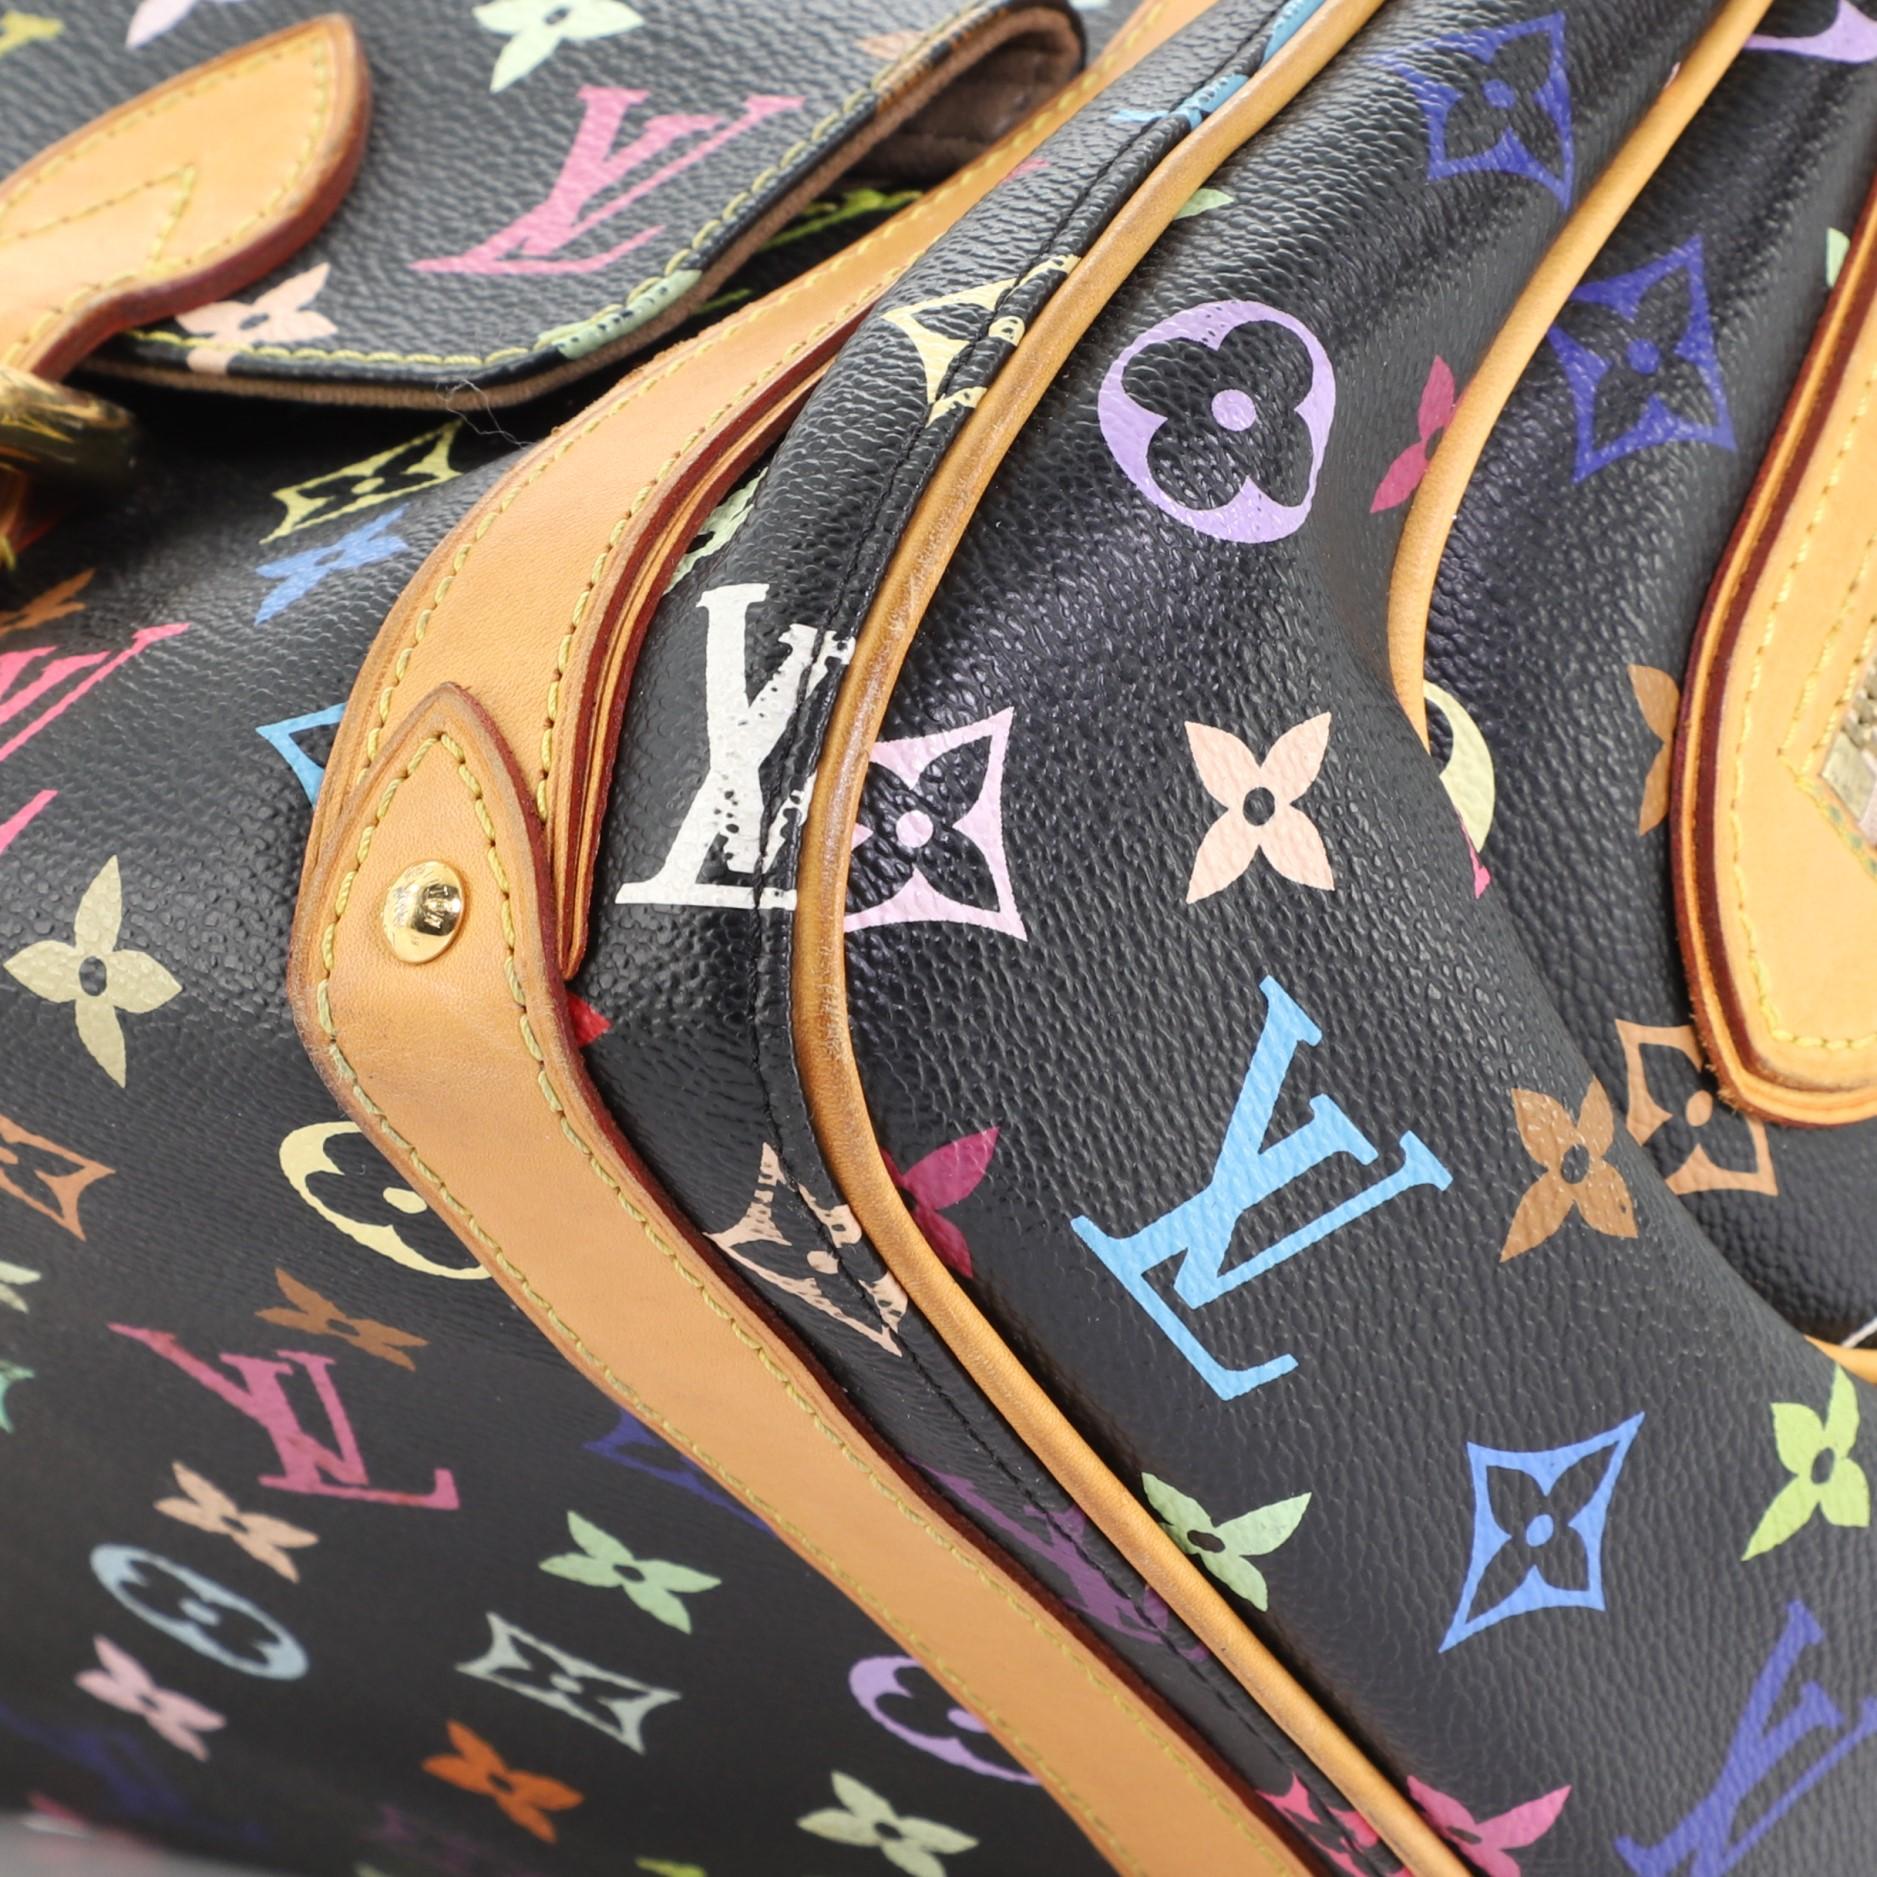 Black Louis Vuitton Priscilla Handbag Monogram Multicolor